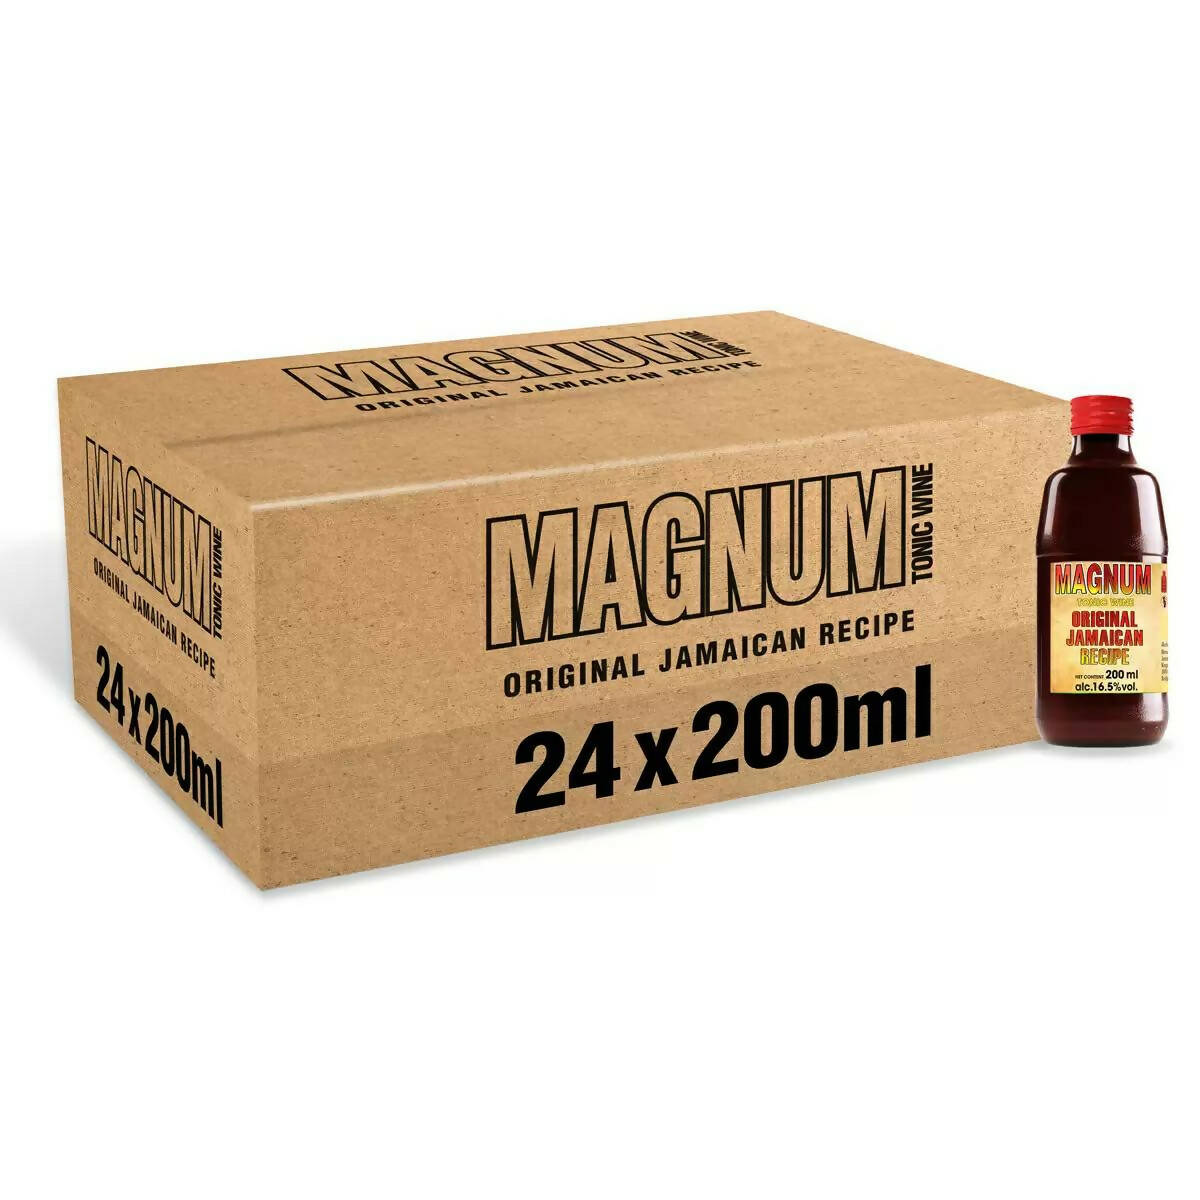 MAGNUM TONIC WINE 24 X 200ML - McGrocer